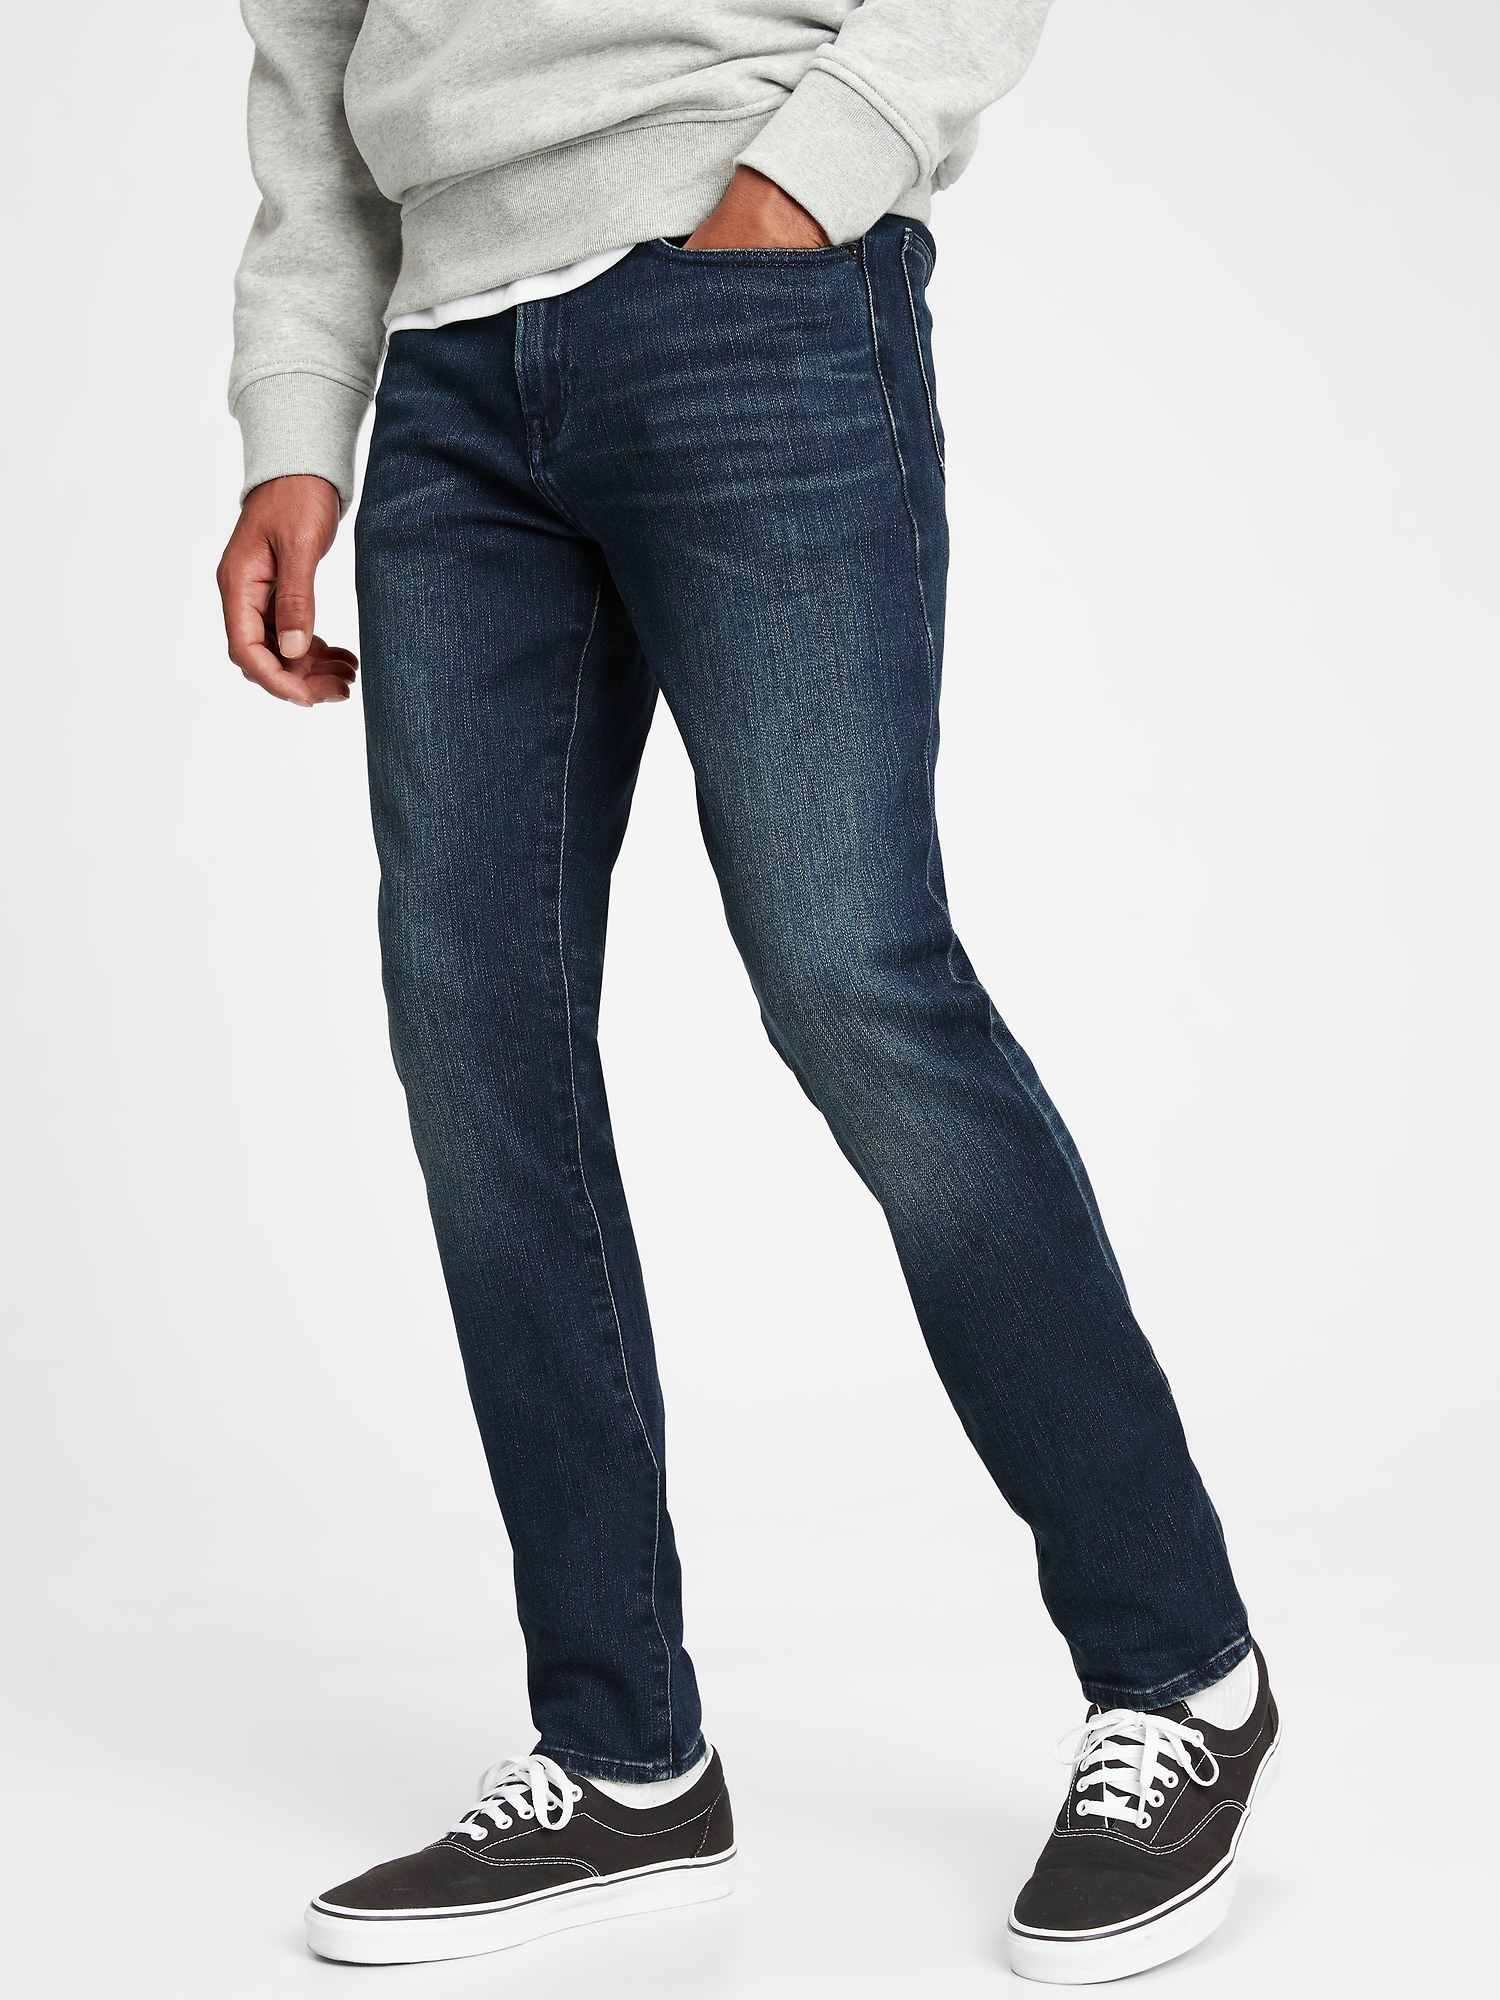 Soft Wear Skinny Jeans with GapFlex | Gap